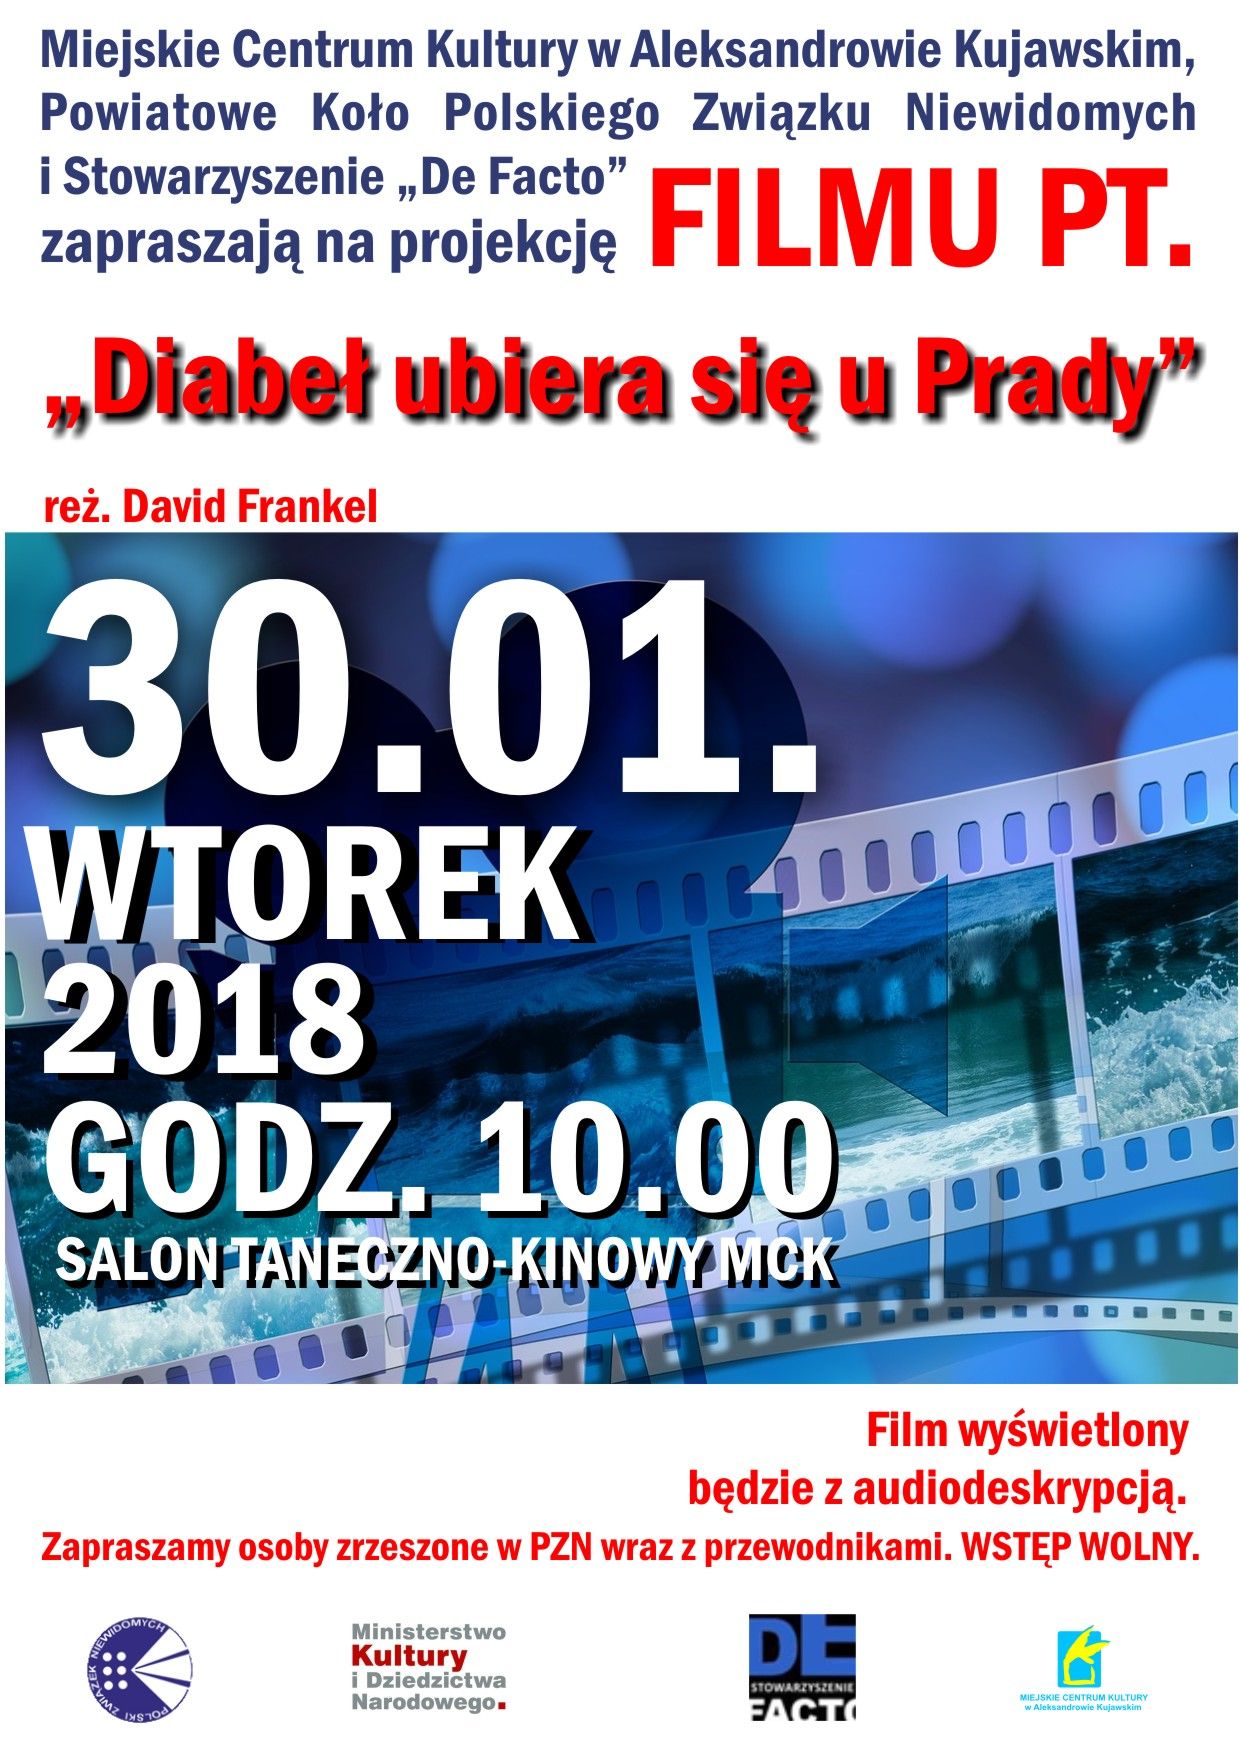  Powiatowe Koło Polskiego Związku Niewidomych zaprasza na film